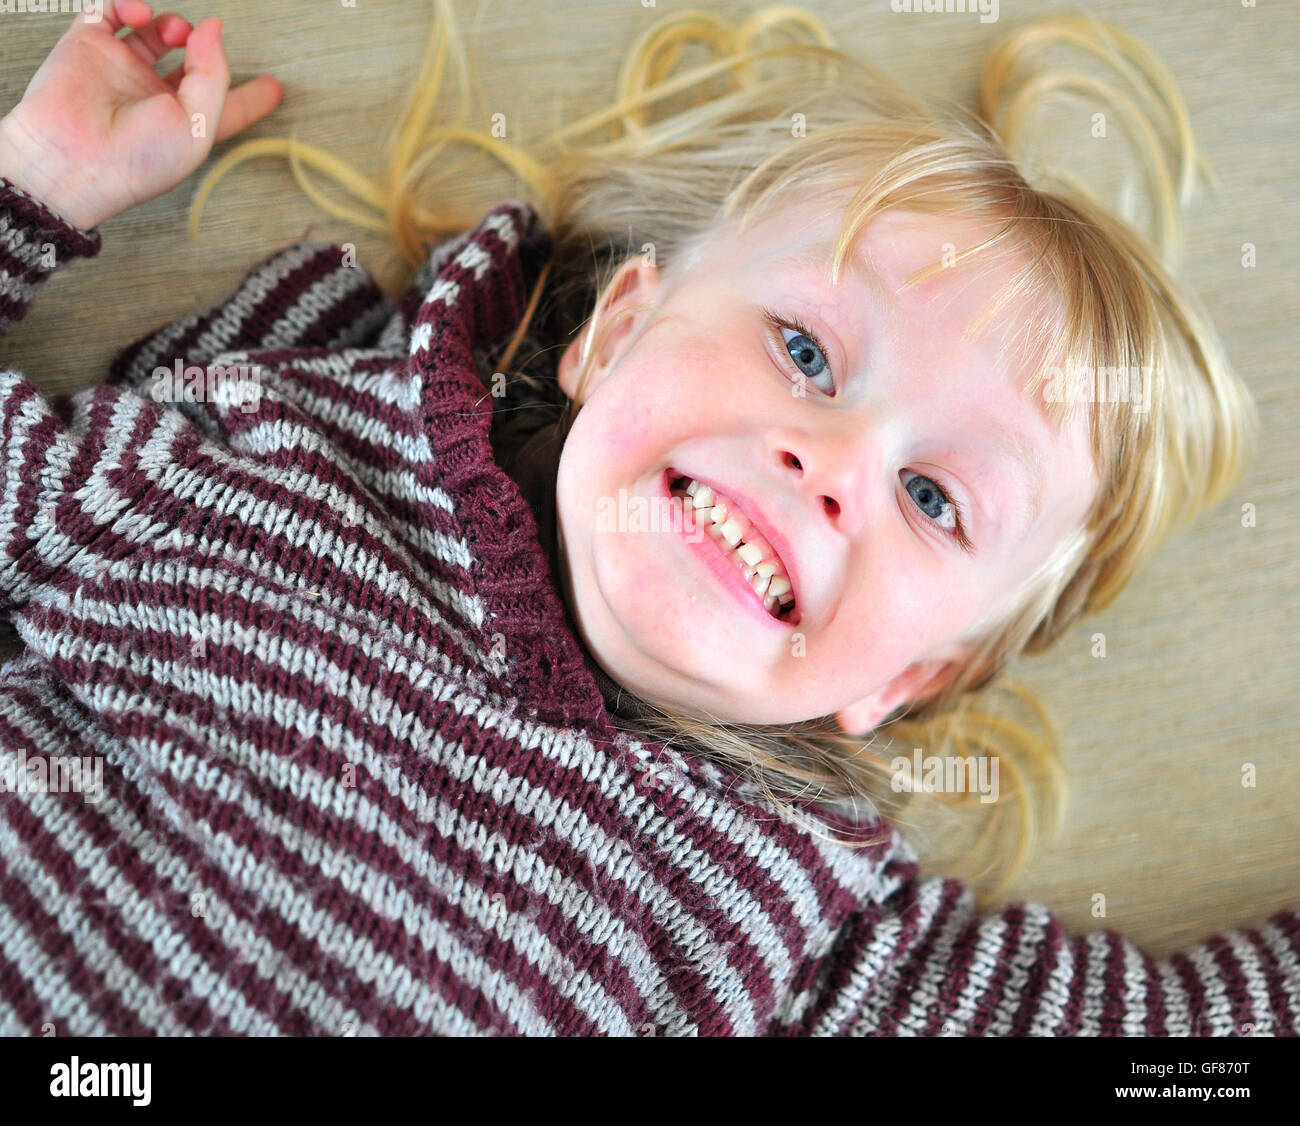 Süß lächelnden Baby mit einer langen blonden Haare auf dem Bett liegend Stockfoto